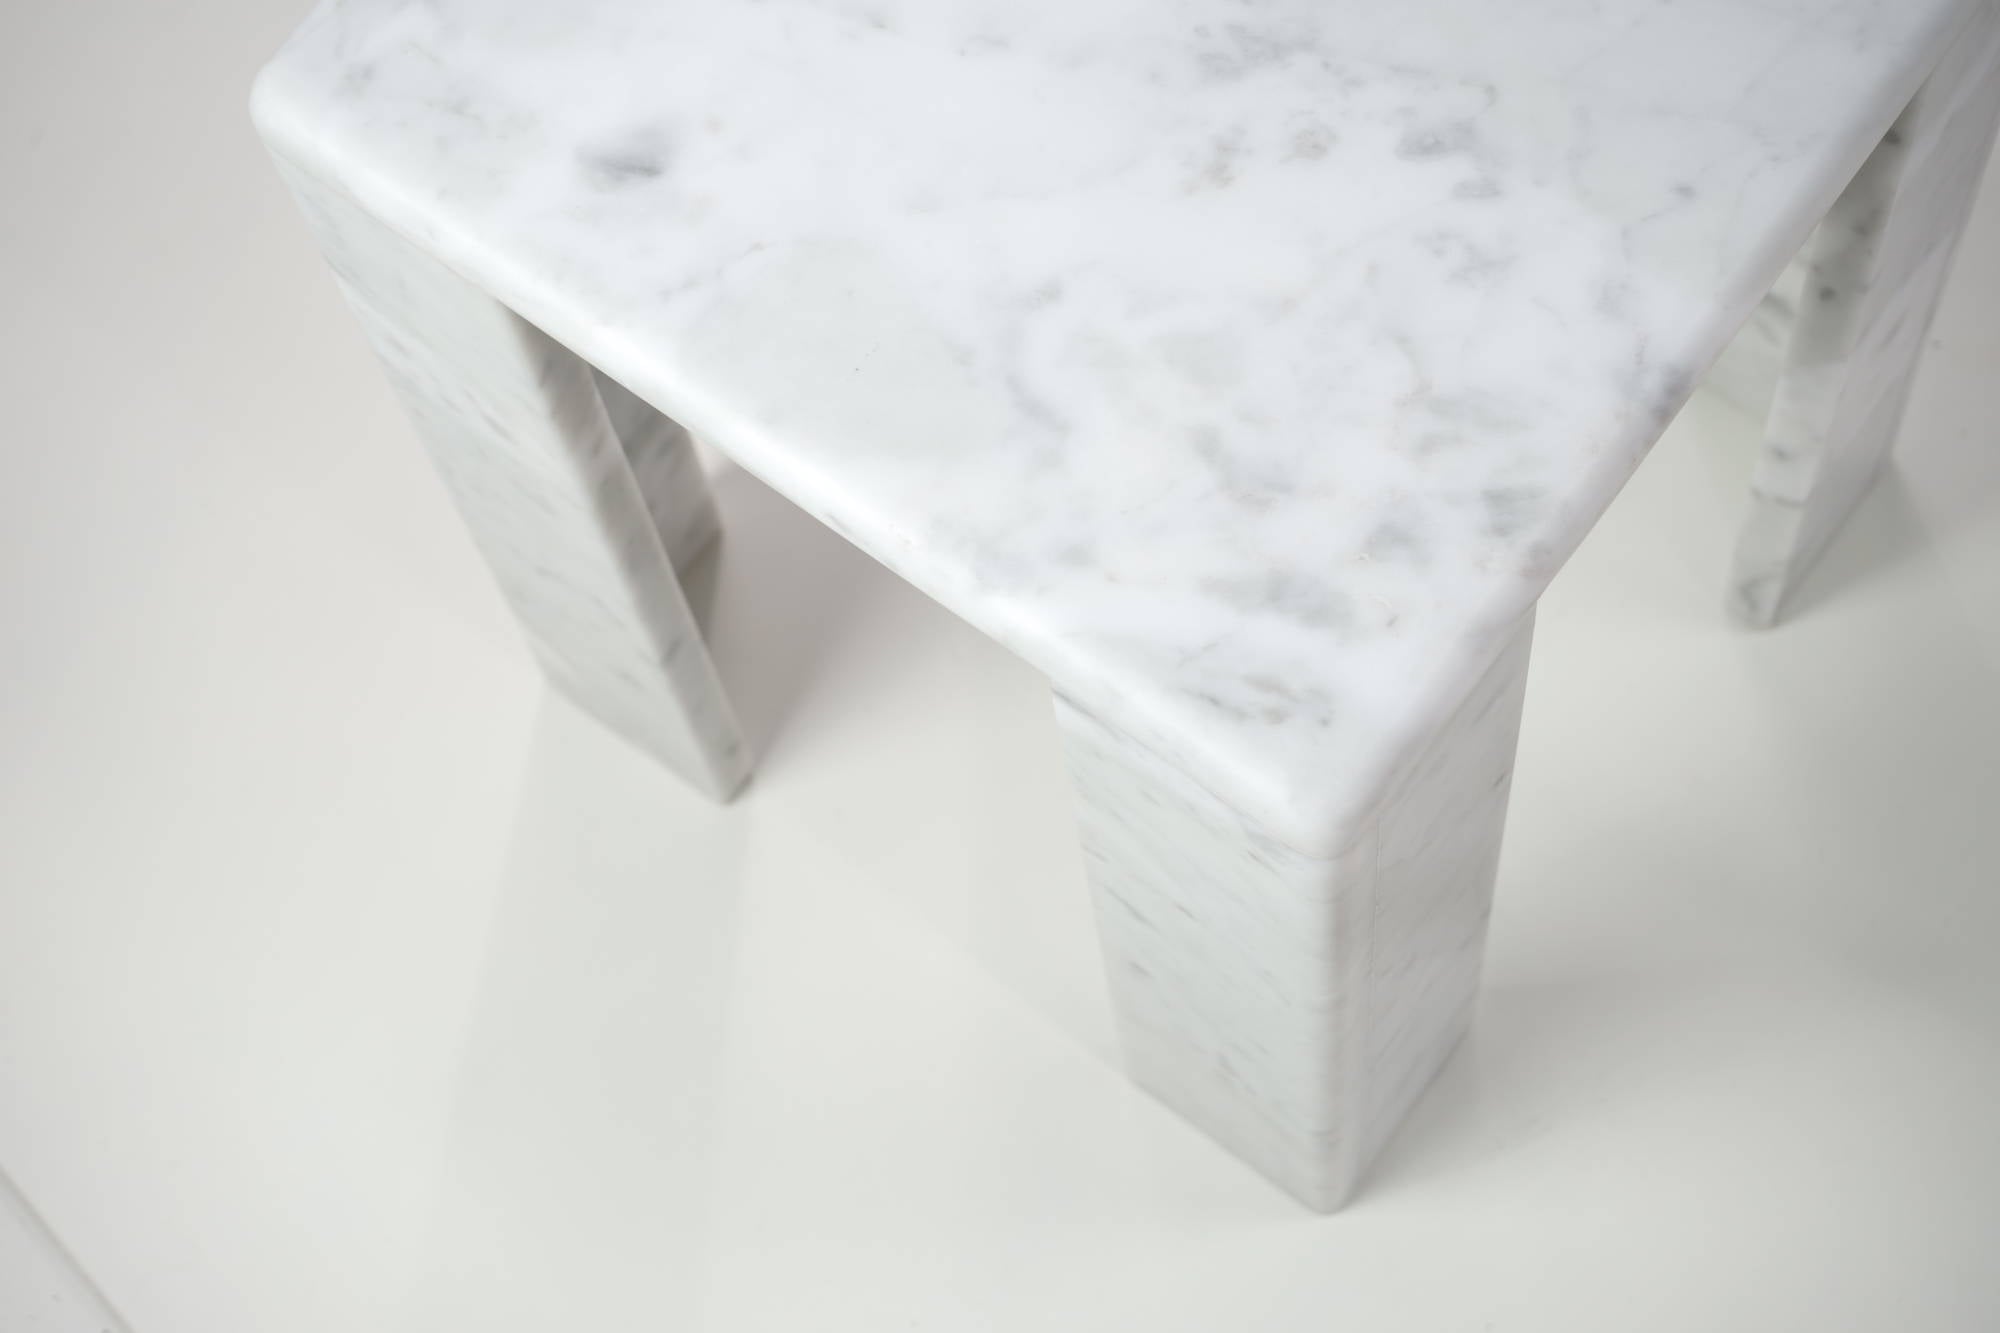 ChunkY02 - Carrara marble side table